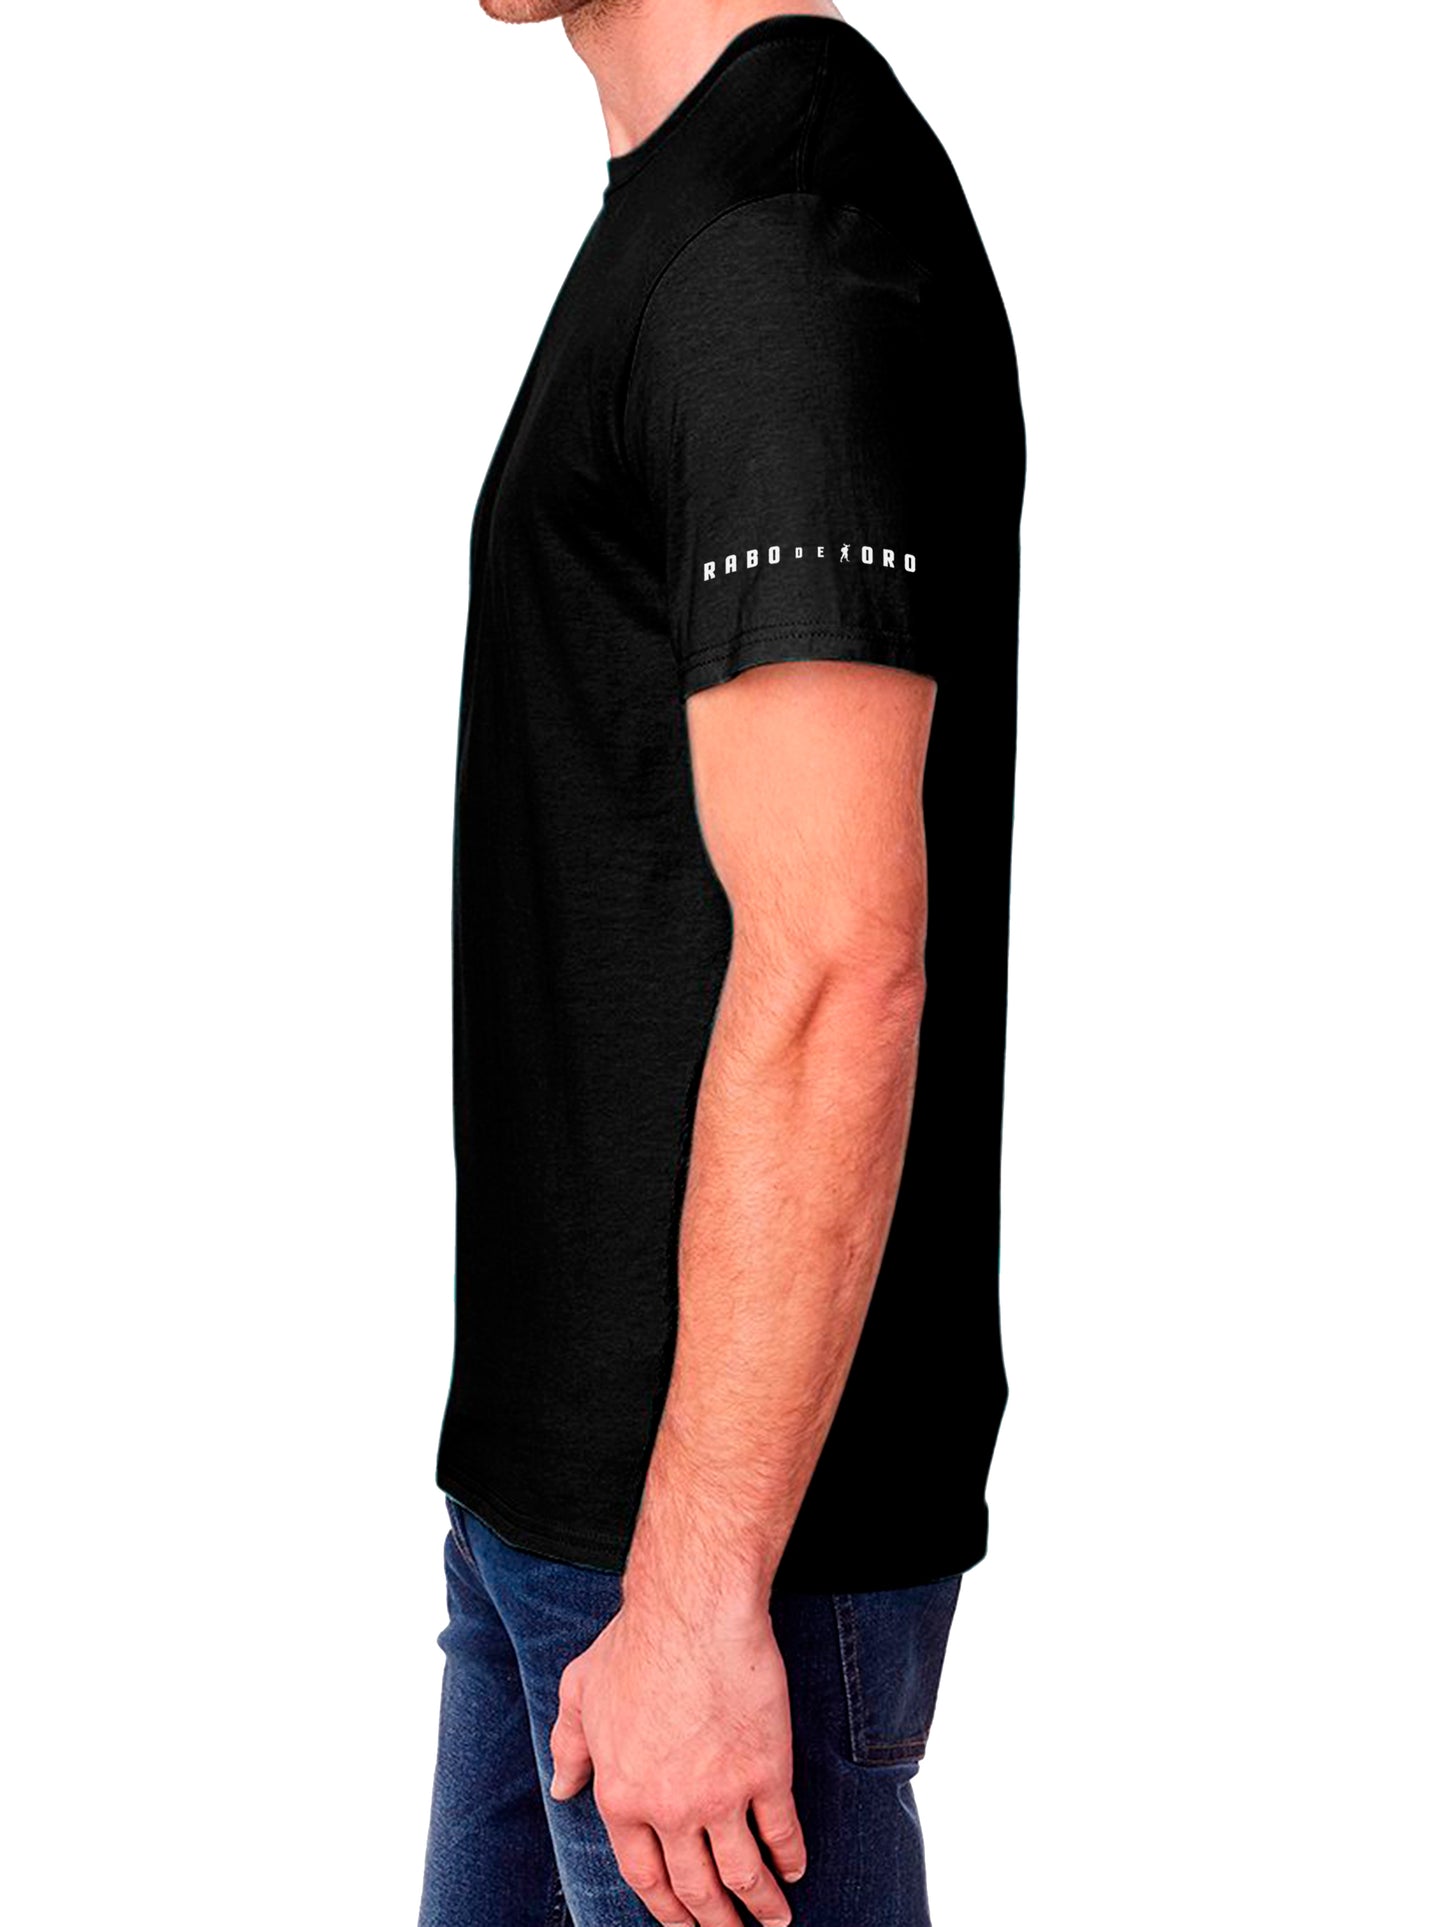 Camiseta ORGULLOSO con detalles de Pata de Oso